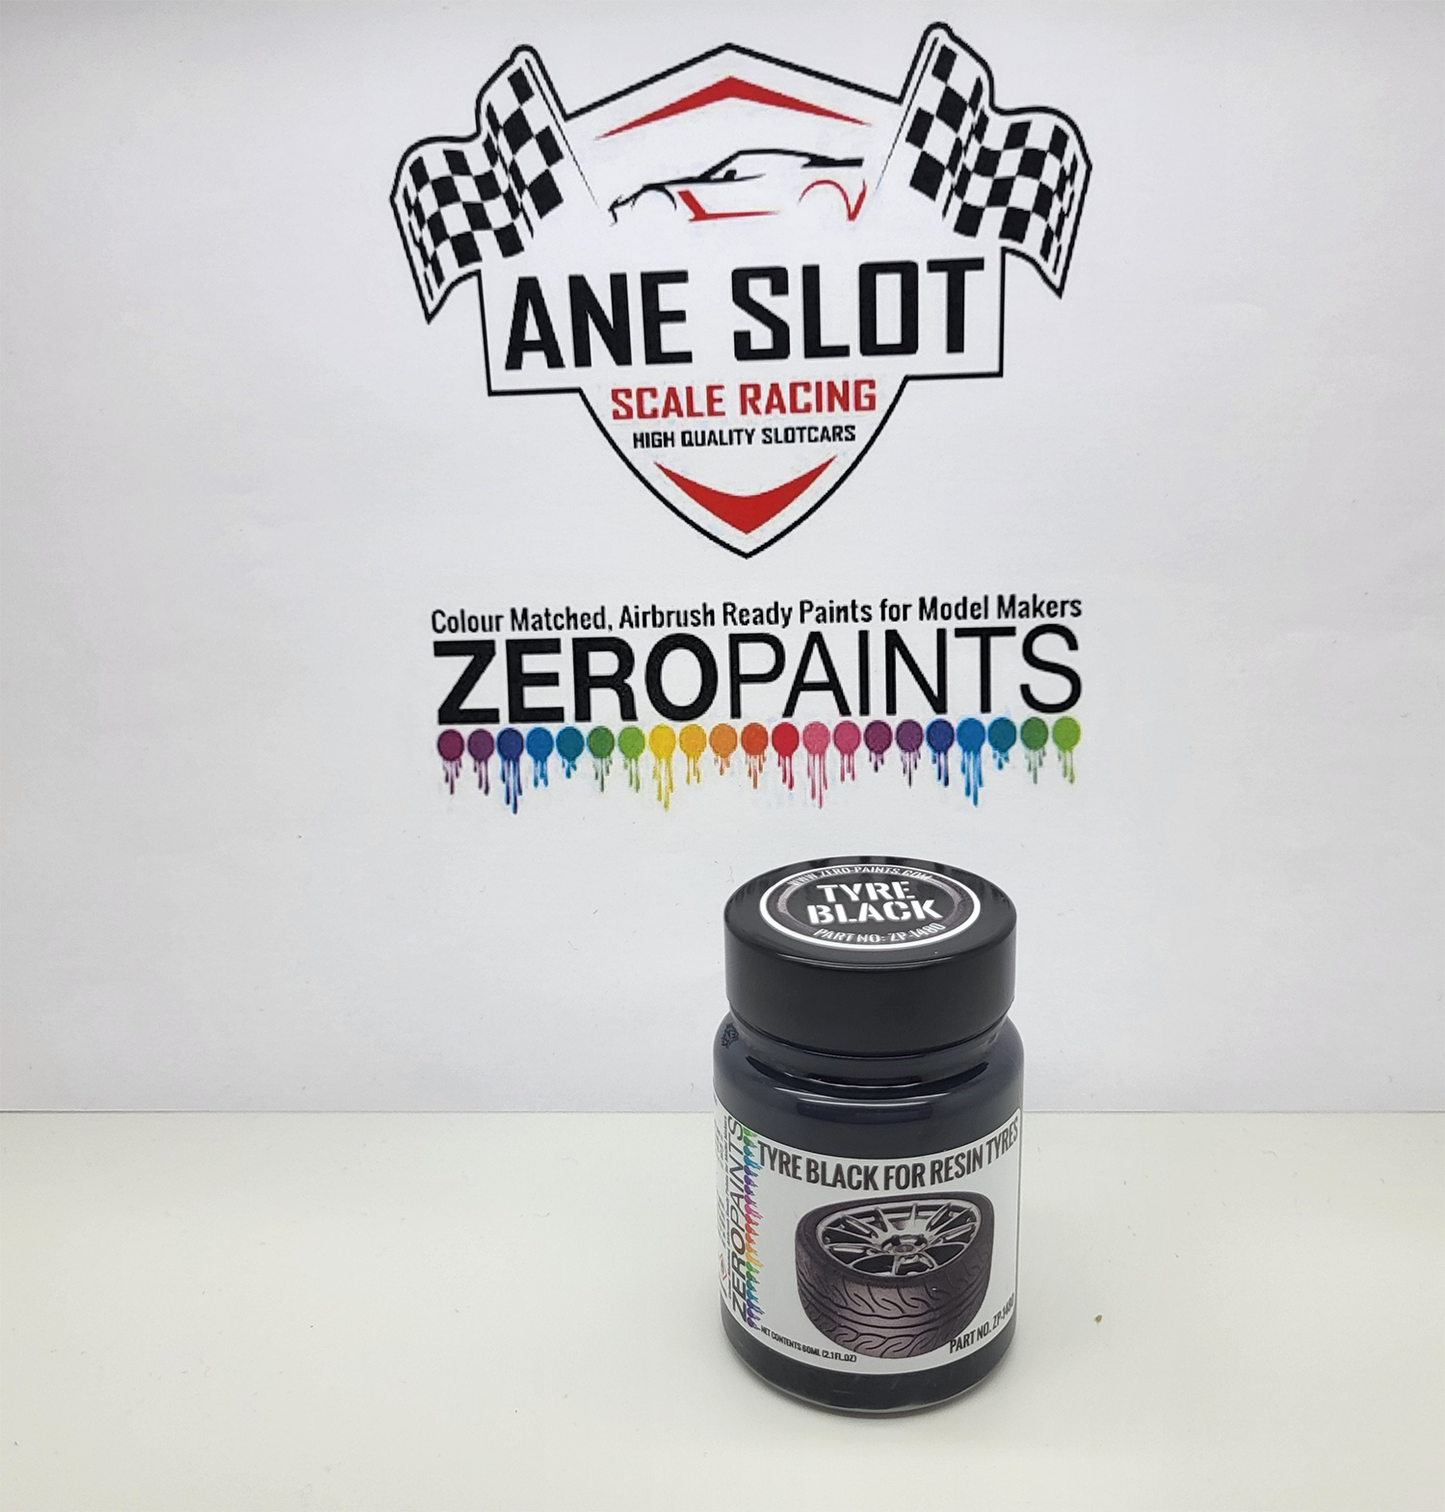 Zeropaints ZP-1480 " Tyre Black "